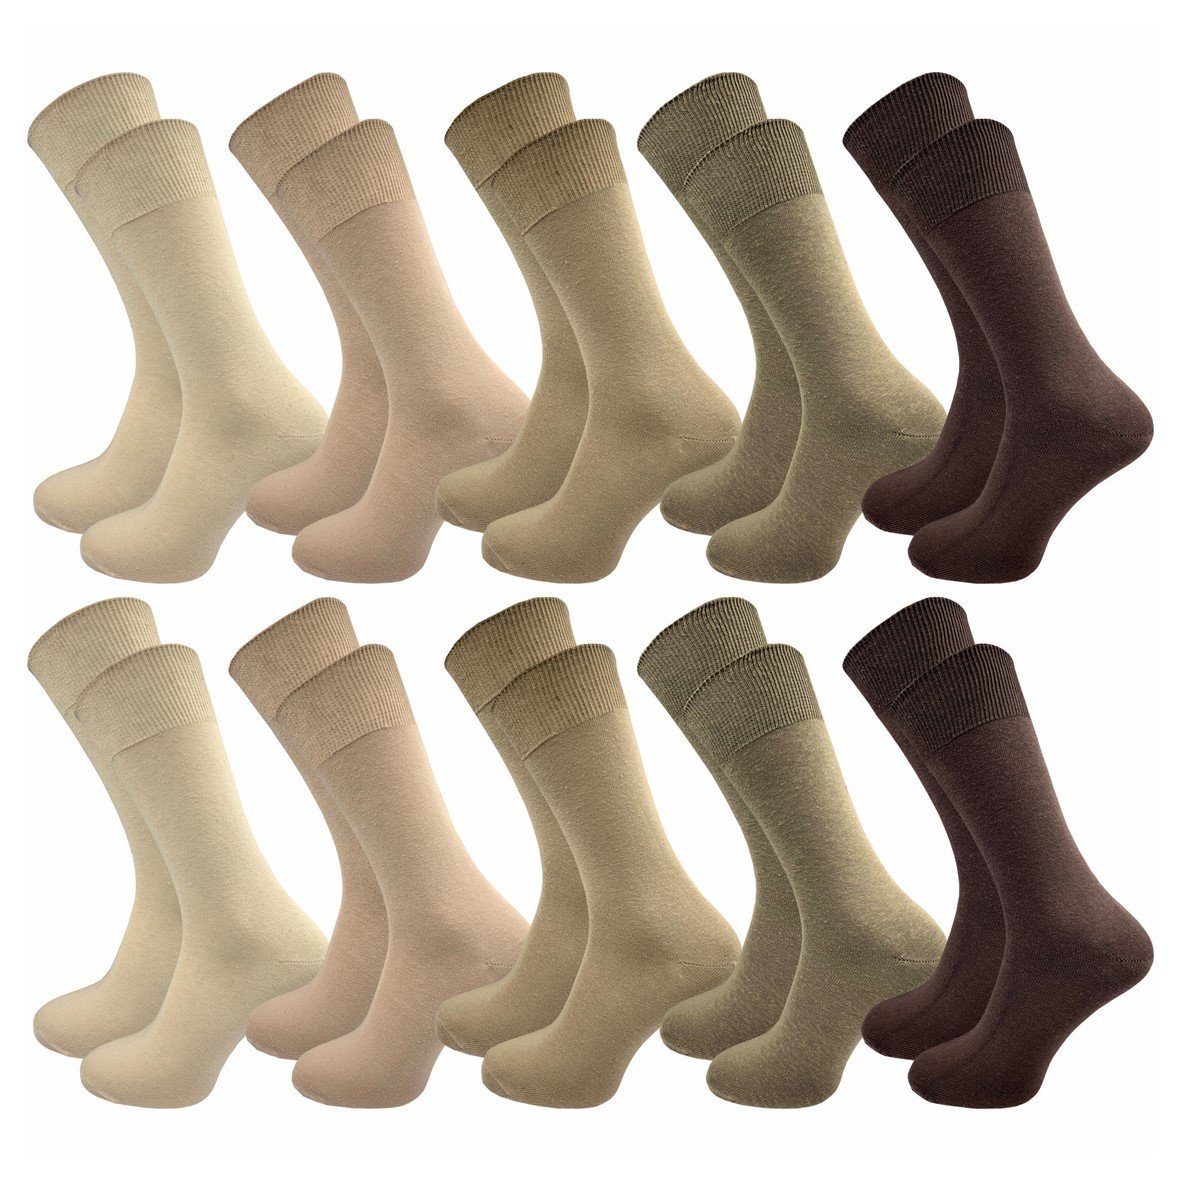 GAWILO Basicsocken aus 100% Baumwolle für Herren in 3 Farbkombinationen ohne Gummidruck (10 Paar) natur-, blau- & dunkle Töne - ideale Ergänzung Ihres Socken Sortiments natur Töne | Socken